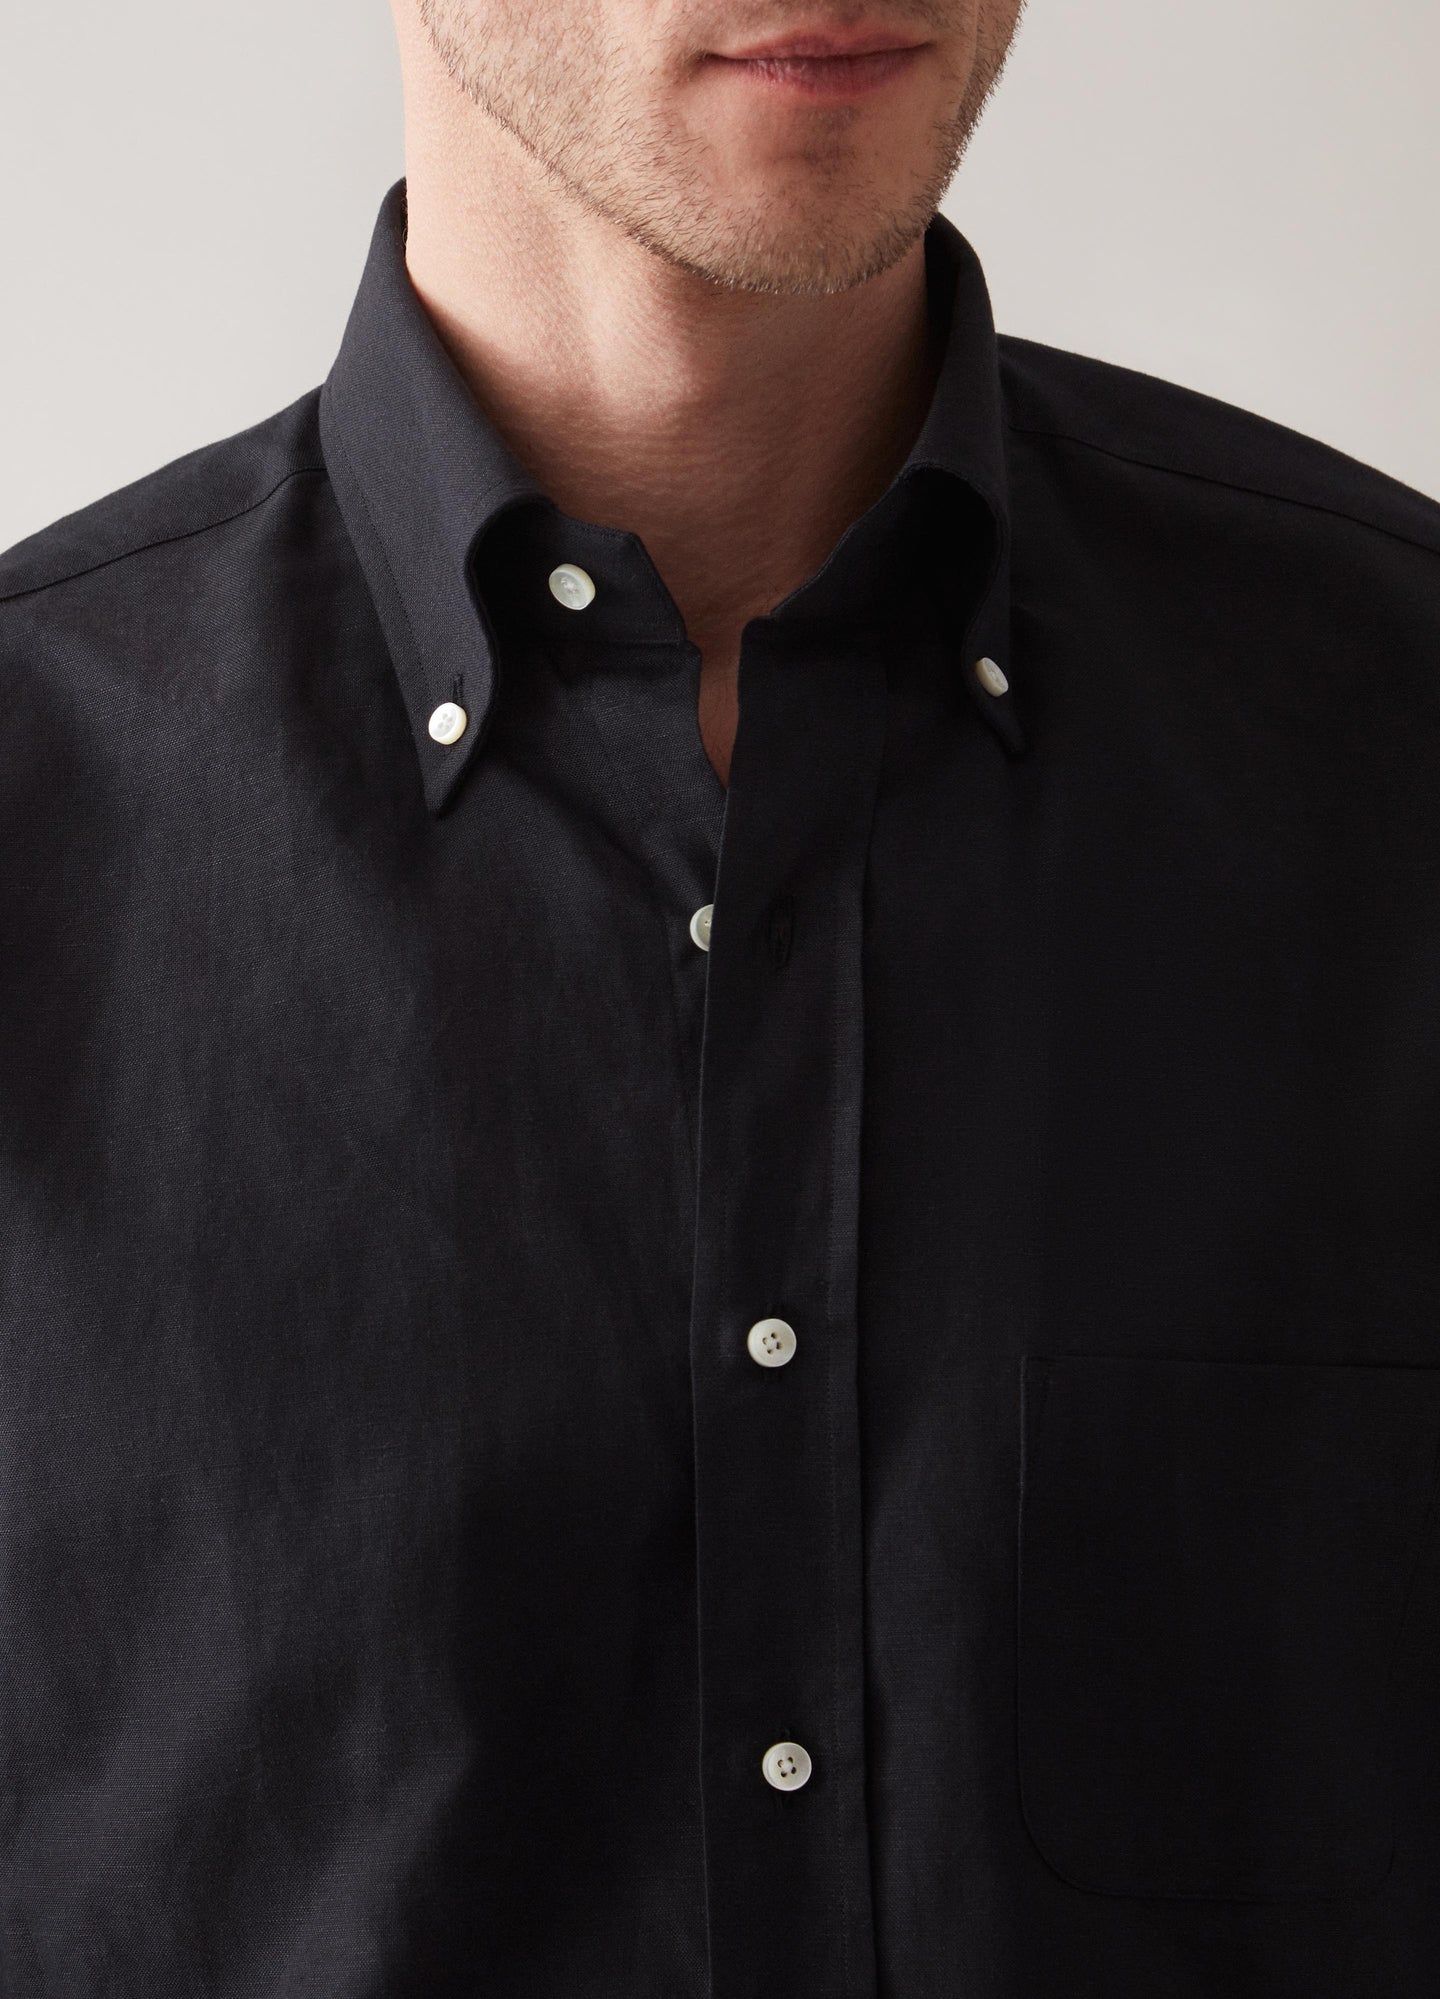 Ferdinand Cotton/Linen Button Down Shirt - Black Berg & Berg